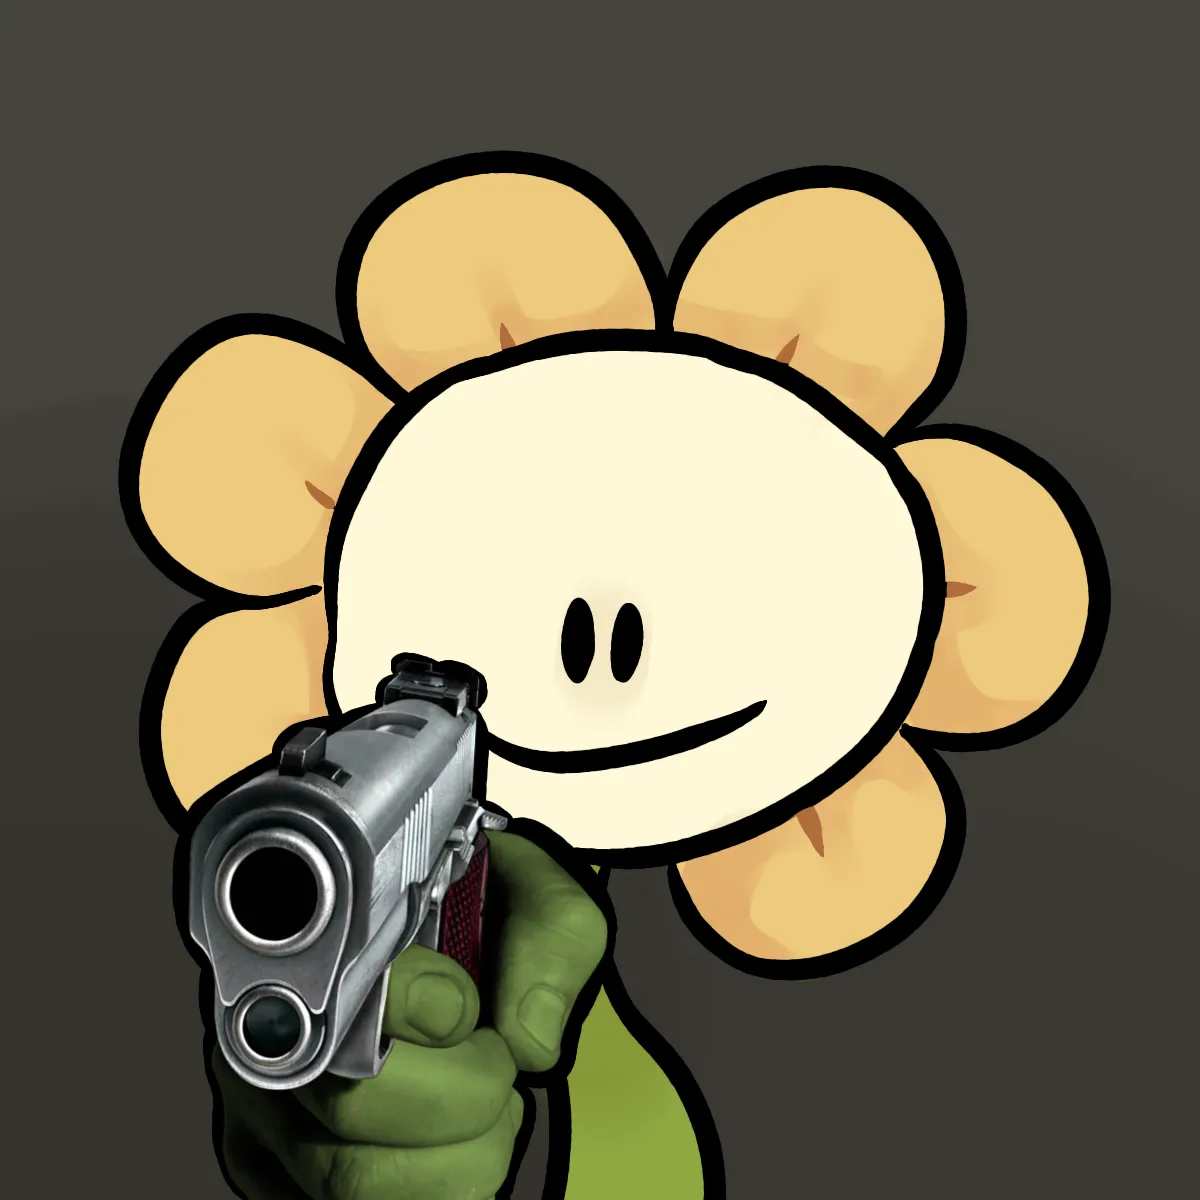 Flowey holding a gun Blank Meme Template